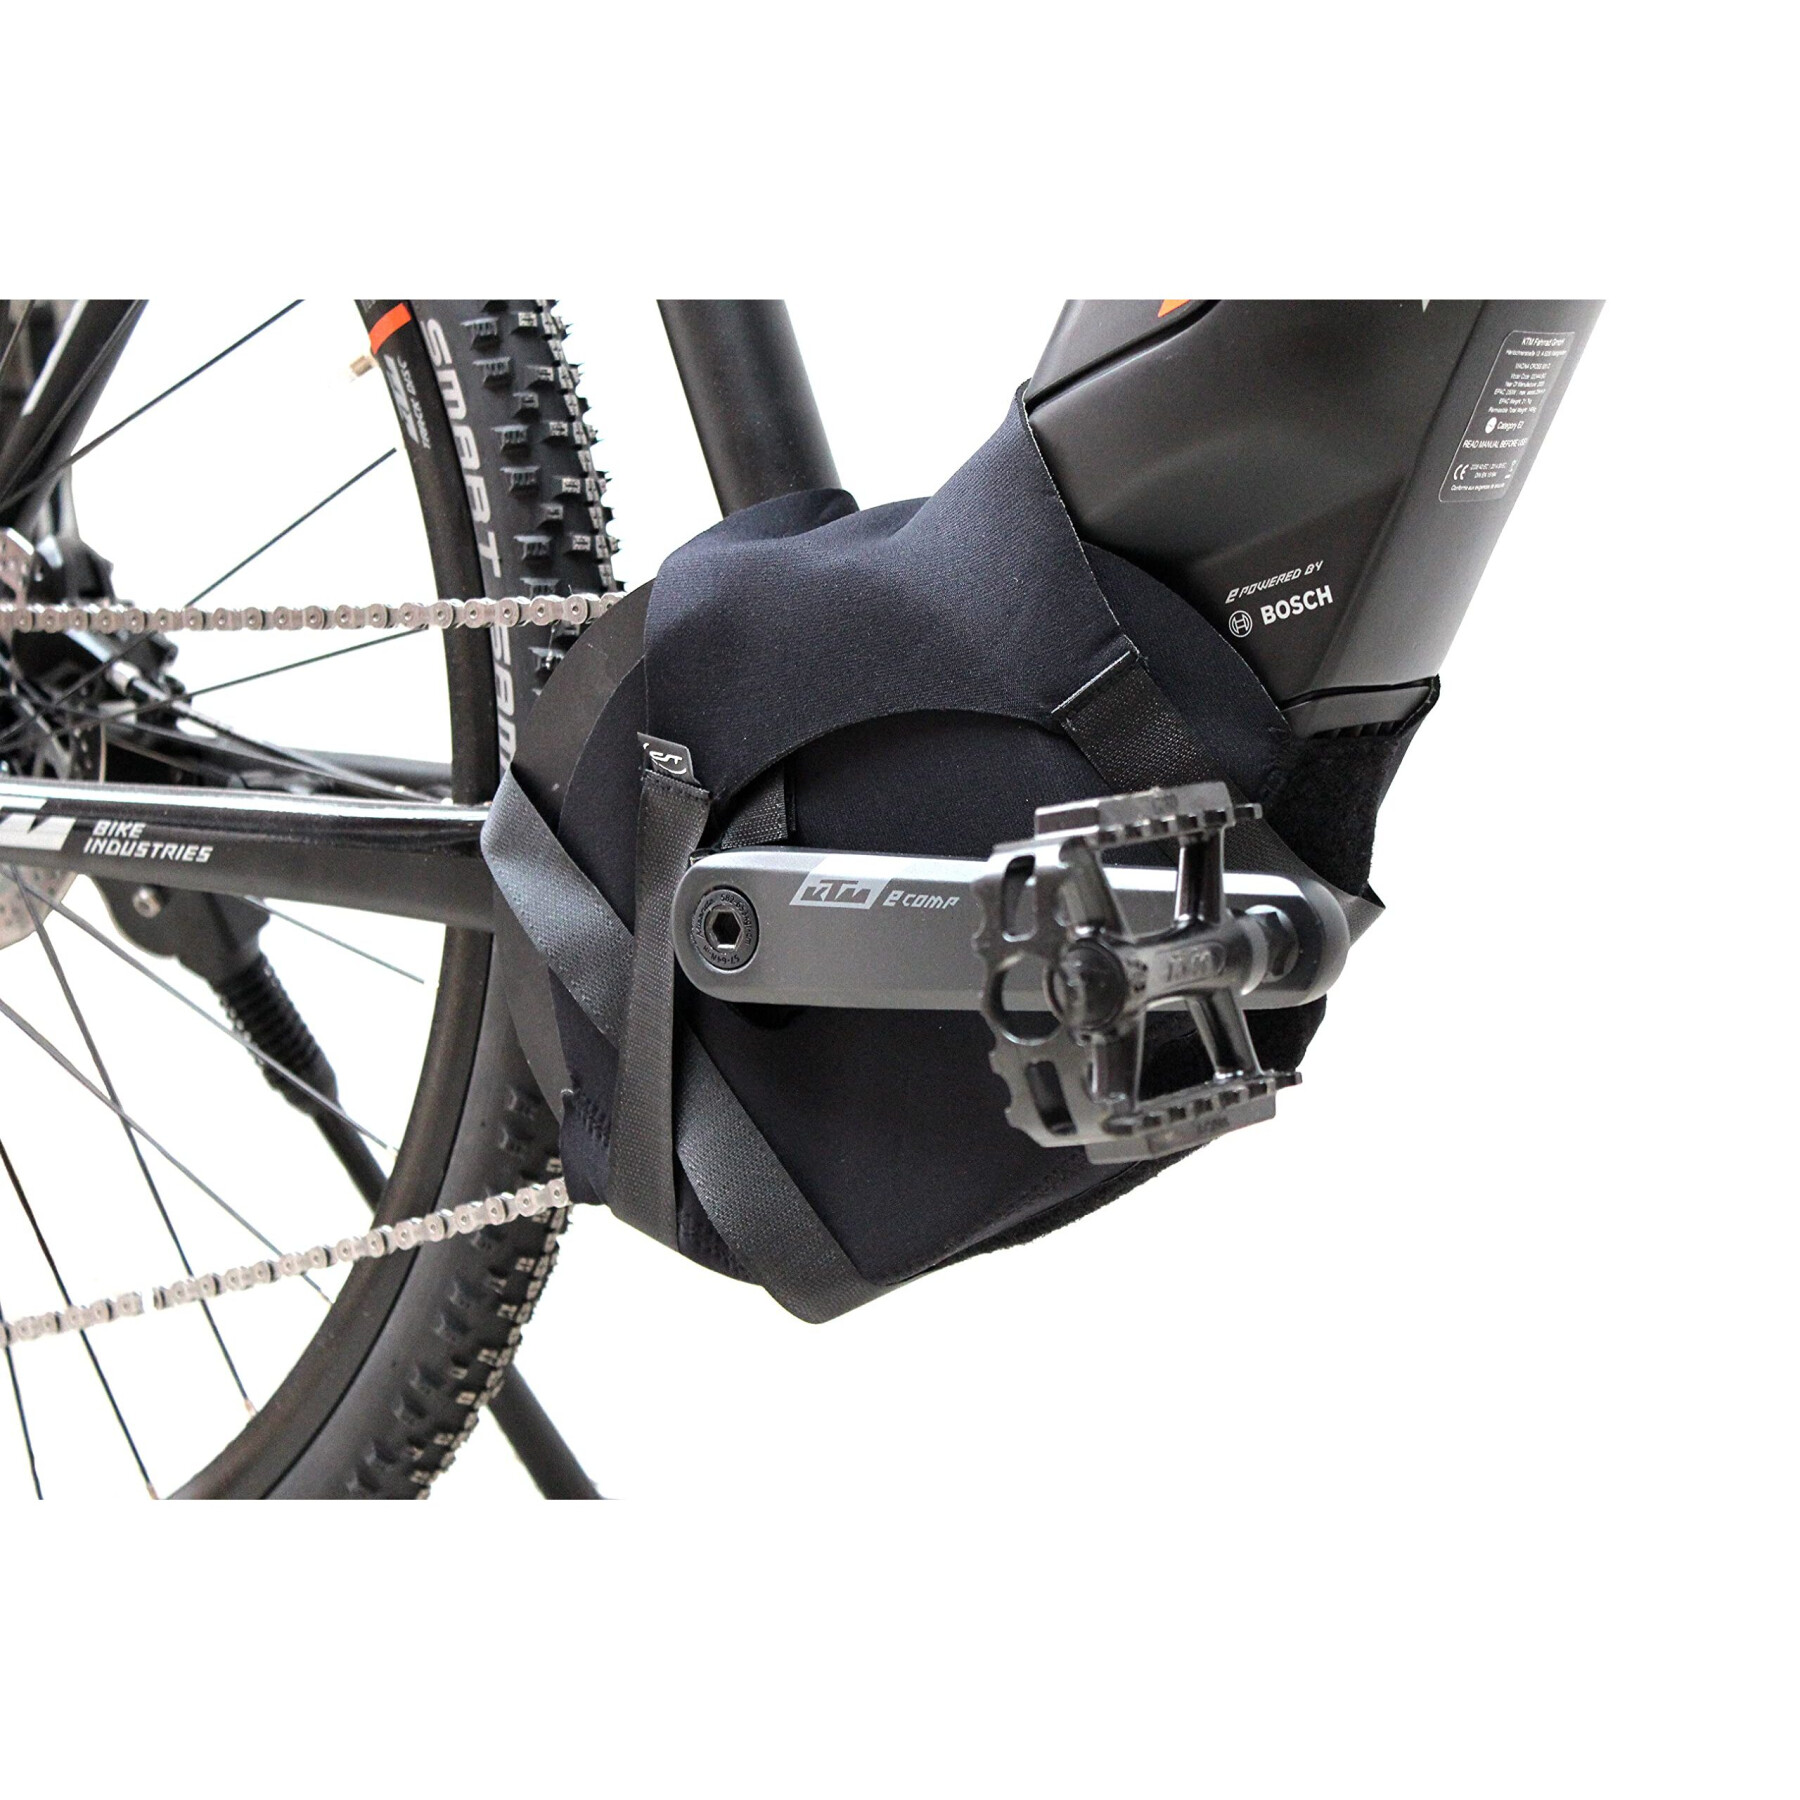 Protección de los pedales motorizados Contec Neo e-bike